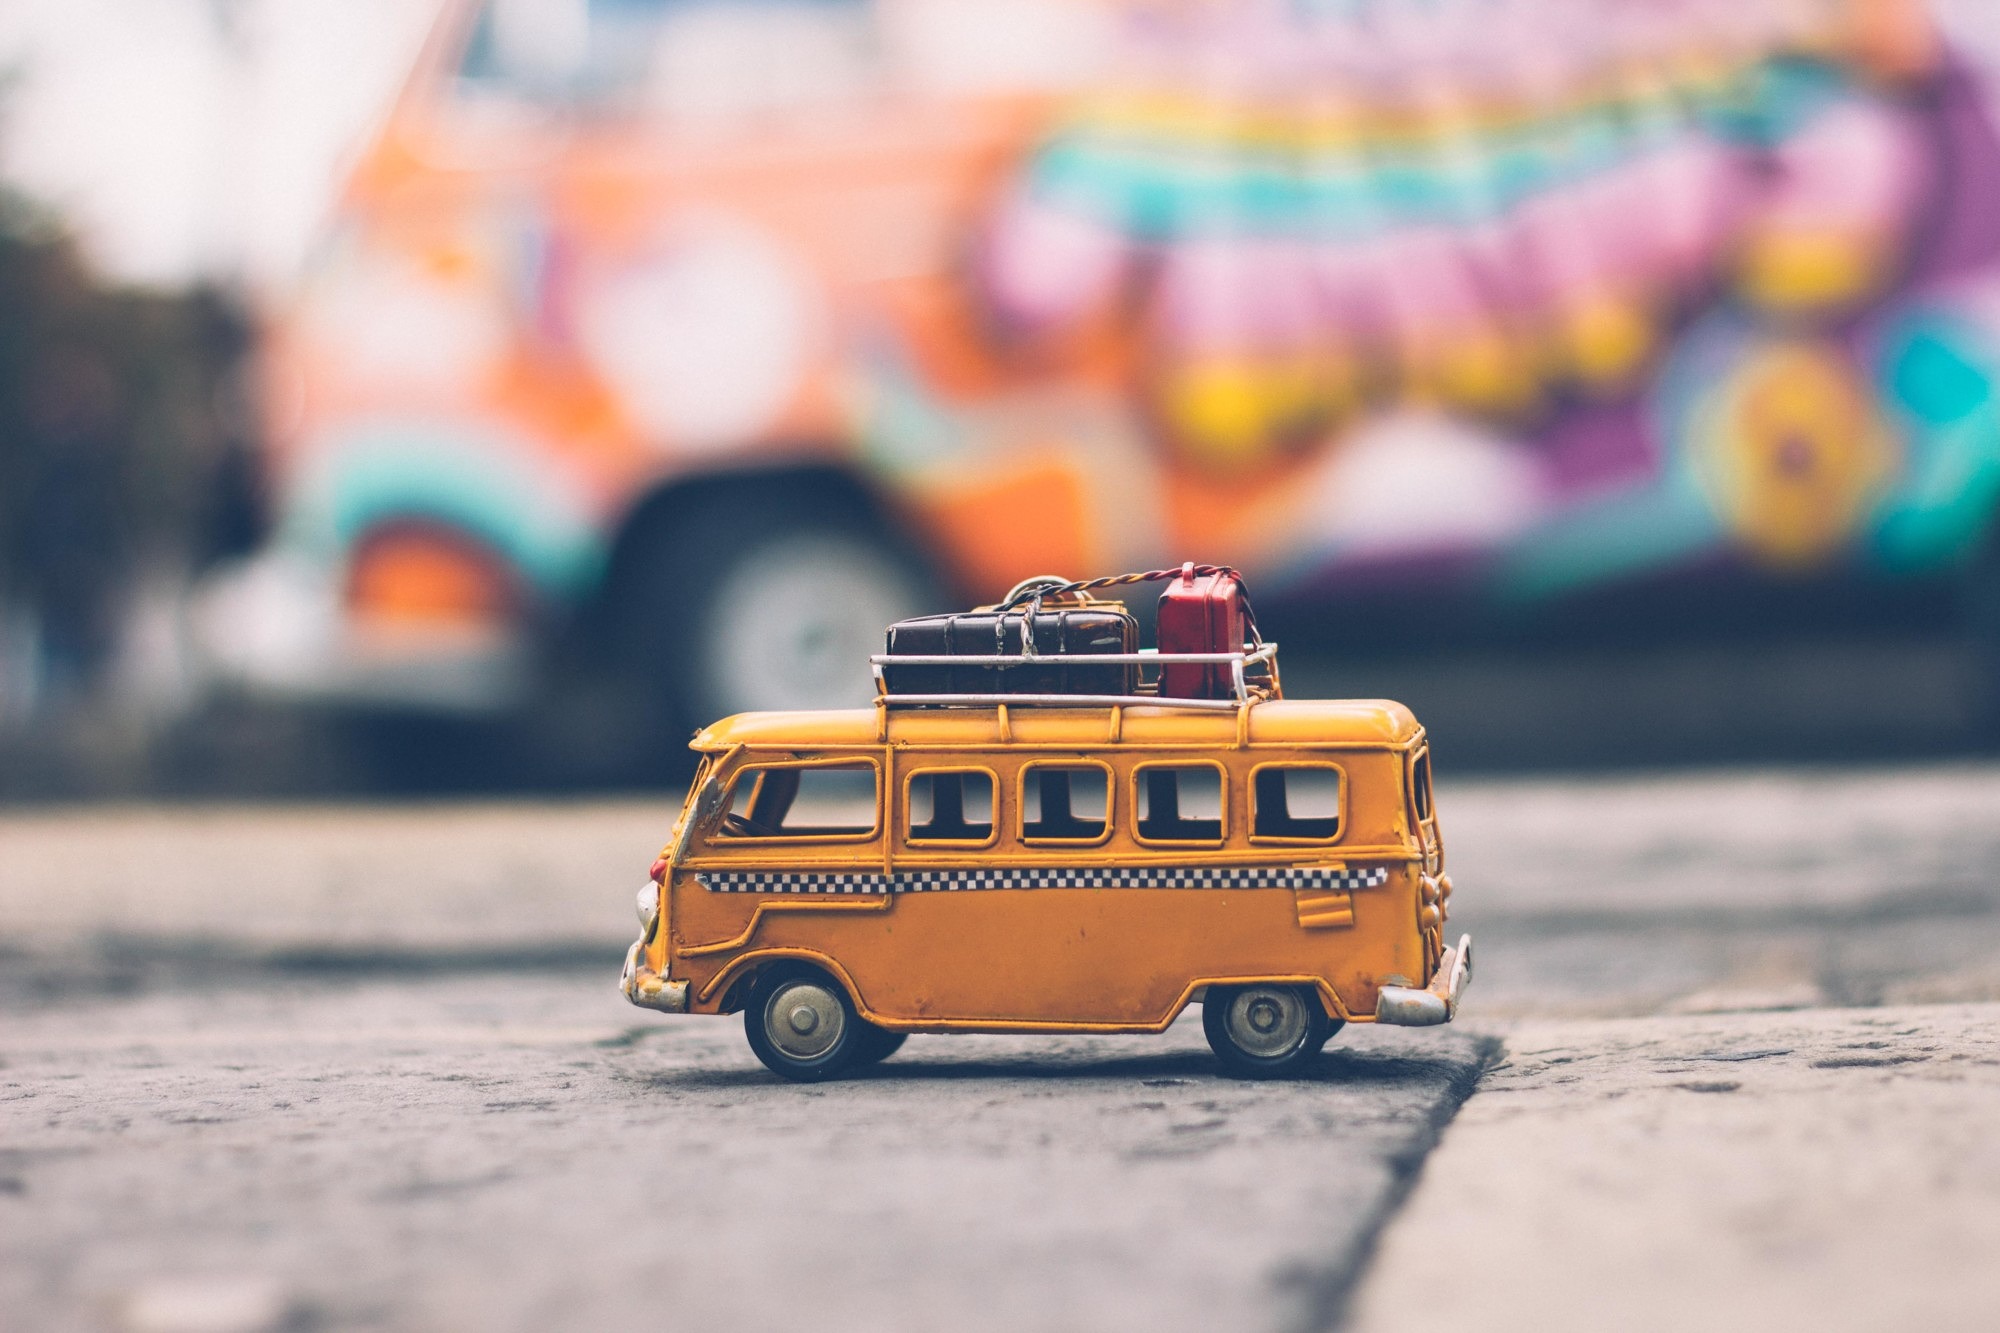 gelber Spielzeug-Bus mit Koffern auf dem Dach